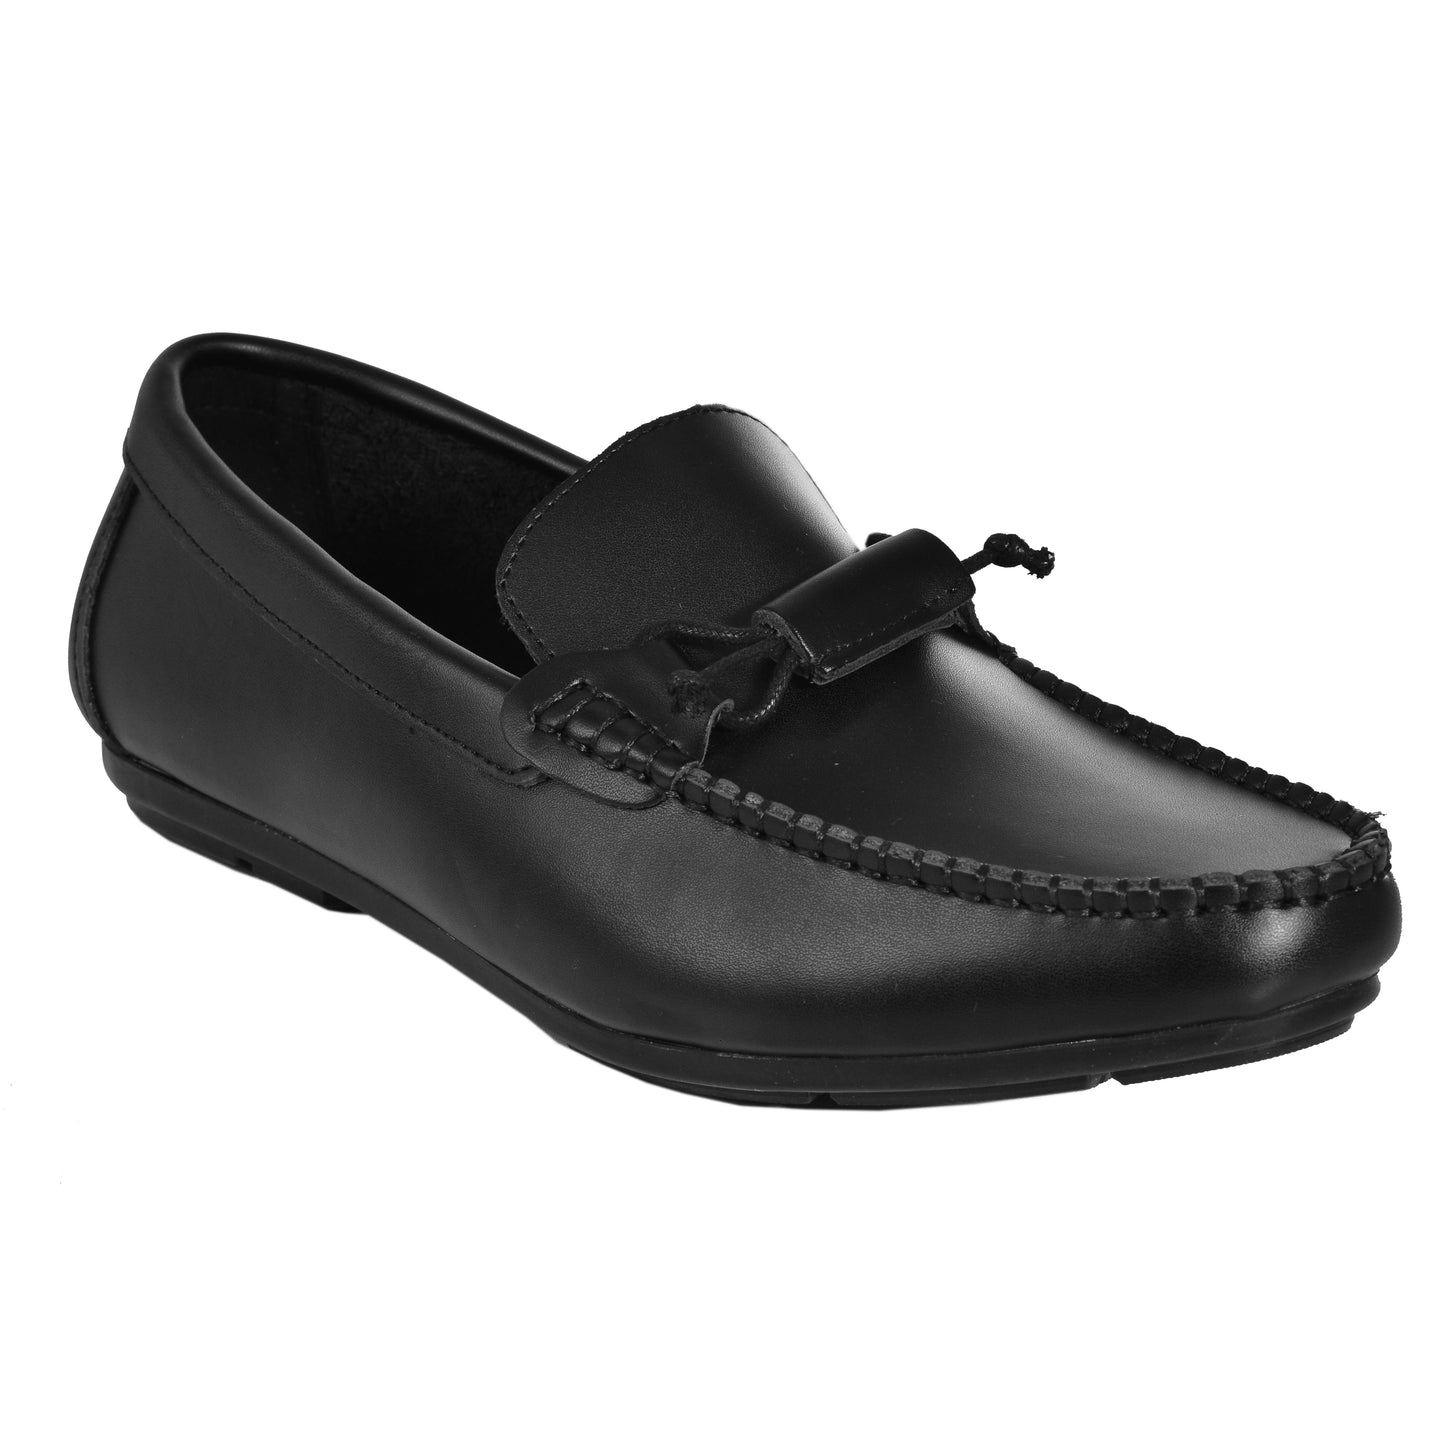 2H #JX21-1 Black Leather Loafer Moccasin